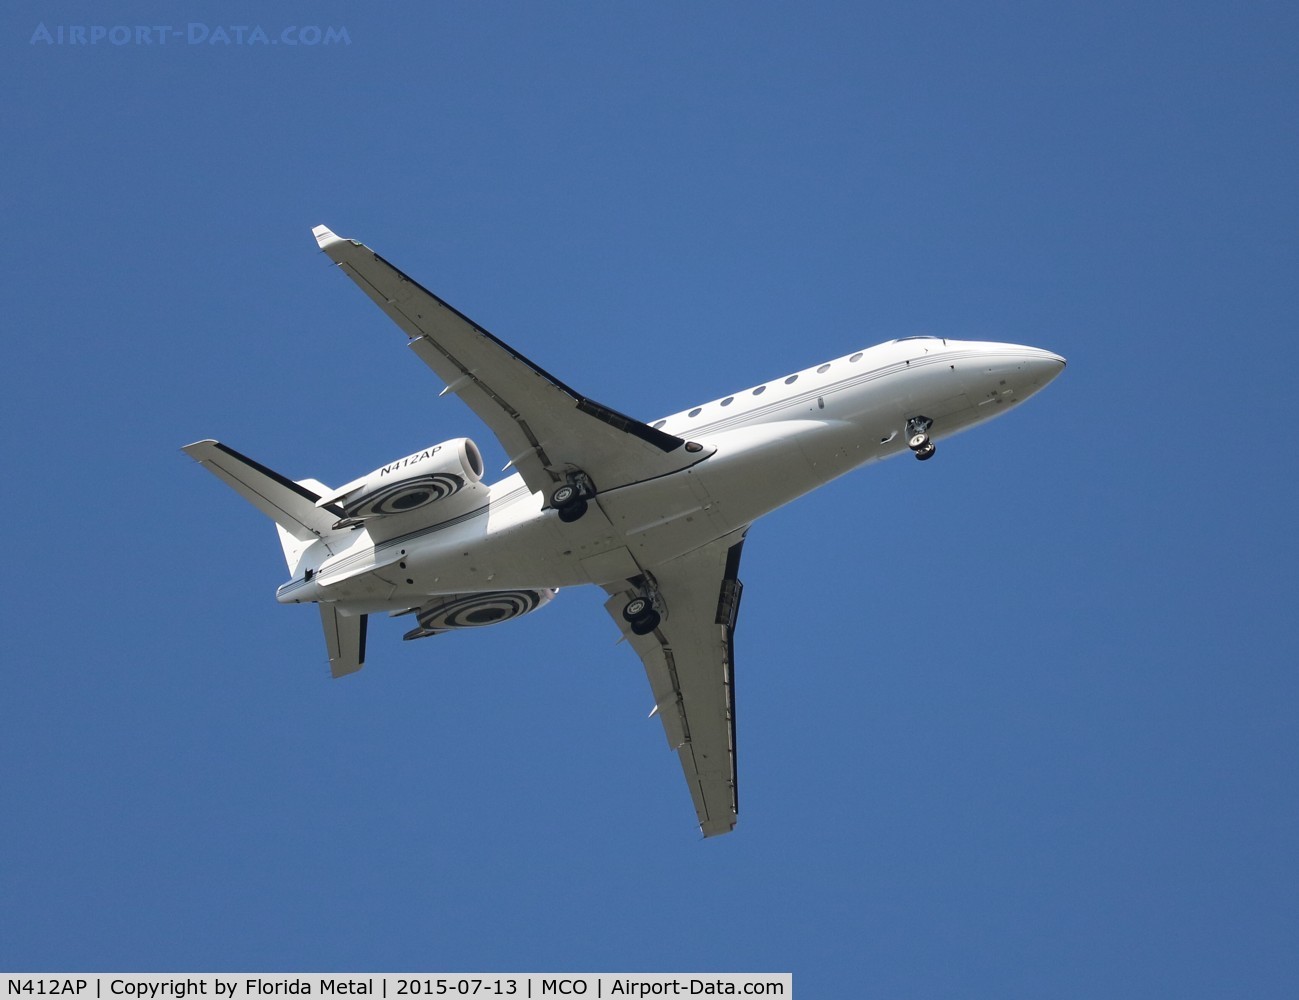 N412AP, 2004 Gulfstream Aerospace G200 C/N 102, Gulfstream G200